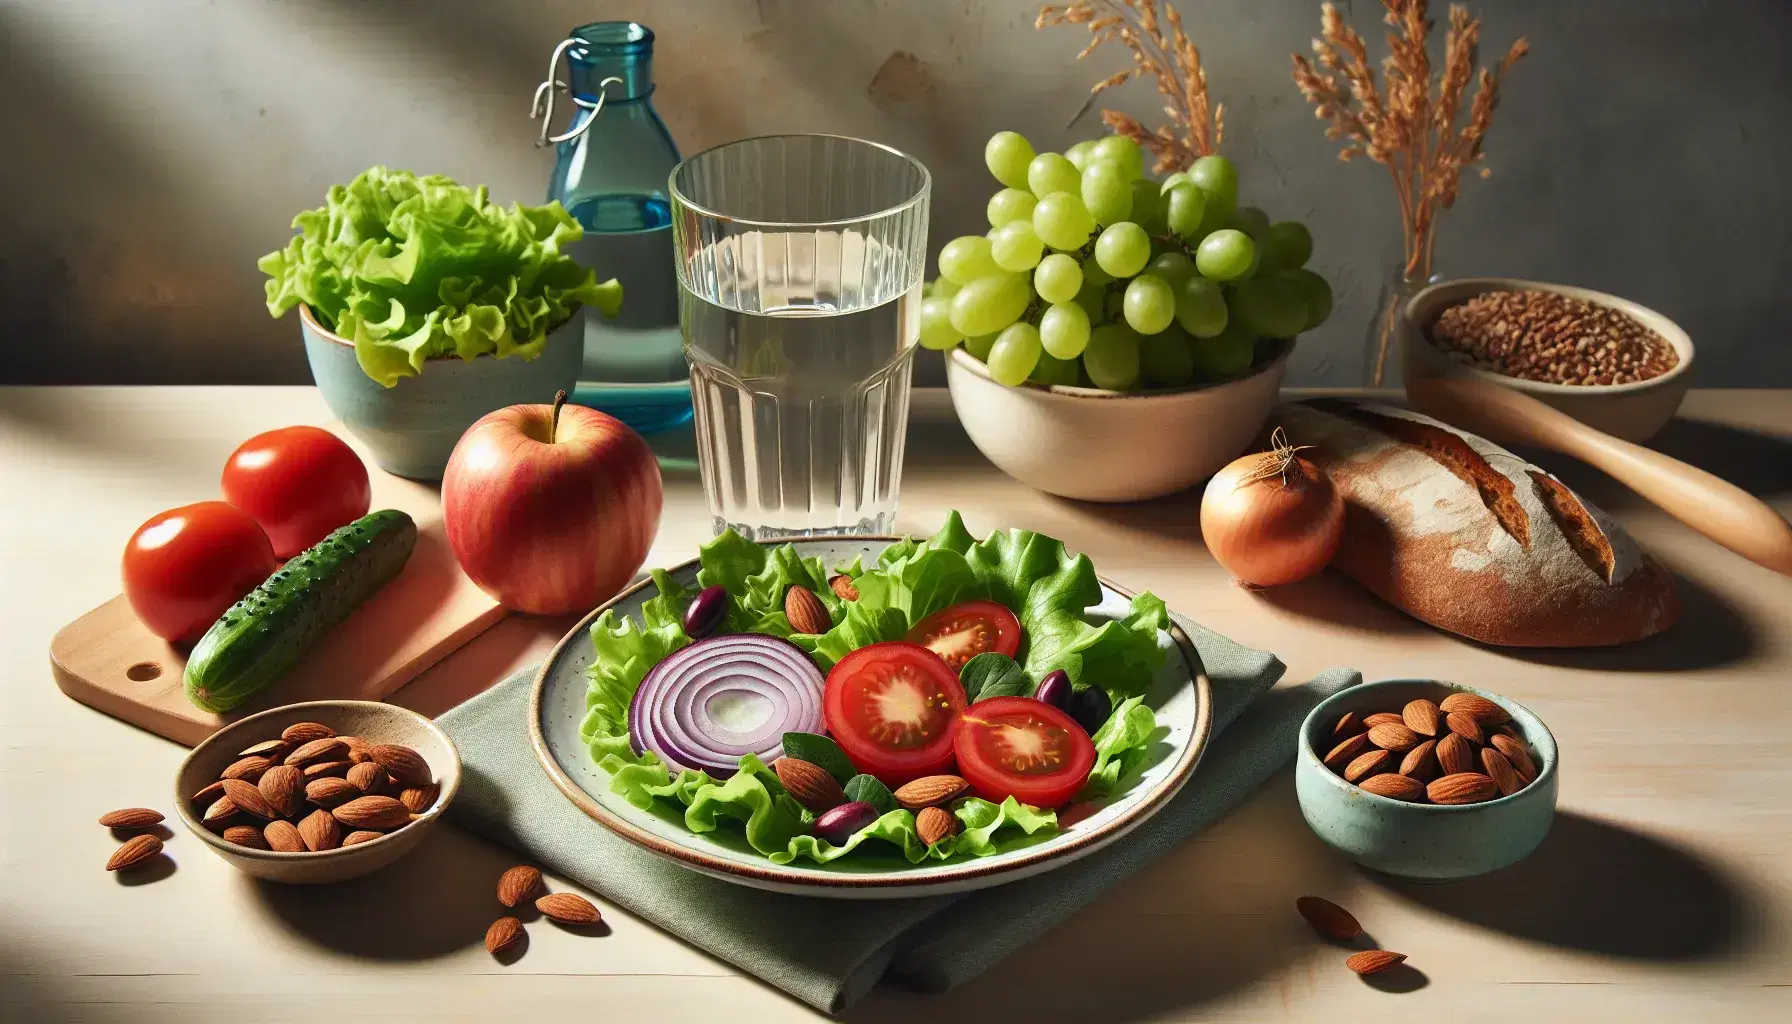 Mesa de madera clara con alimentos saludables, ensalada verde en plato con borde azul, vaso de agua, almendras, manzana roja, uvas verdes y zanahoria pelada.